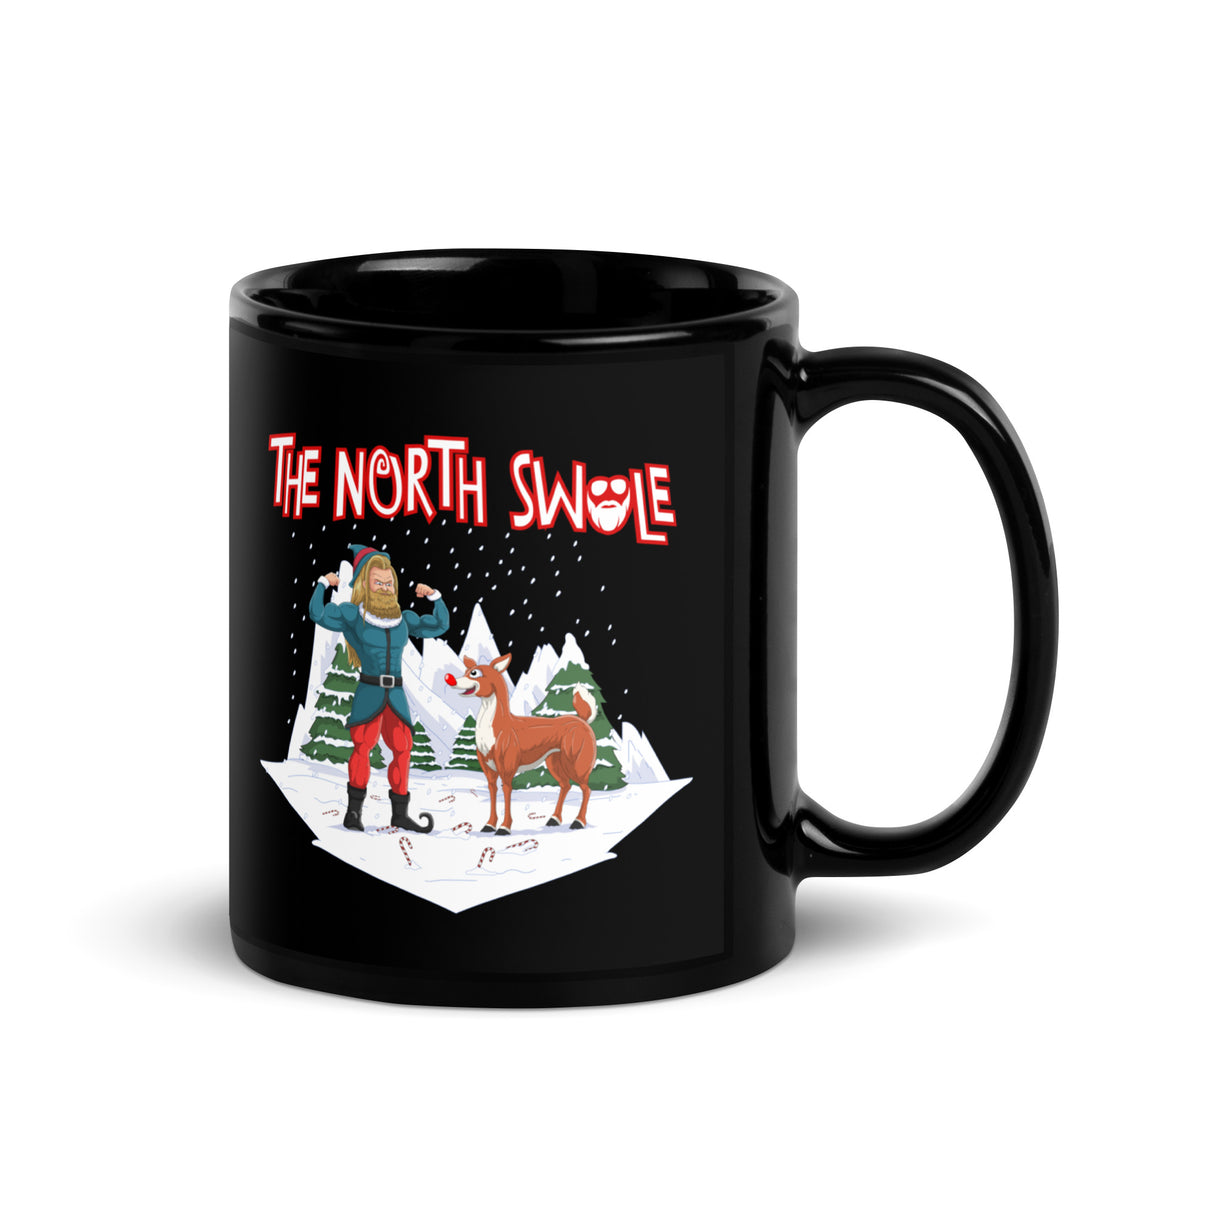 The North Swole Mug